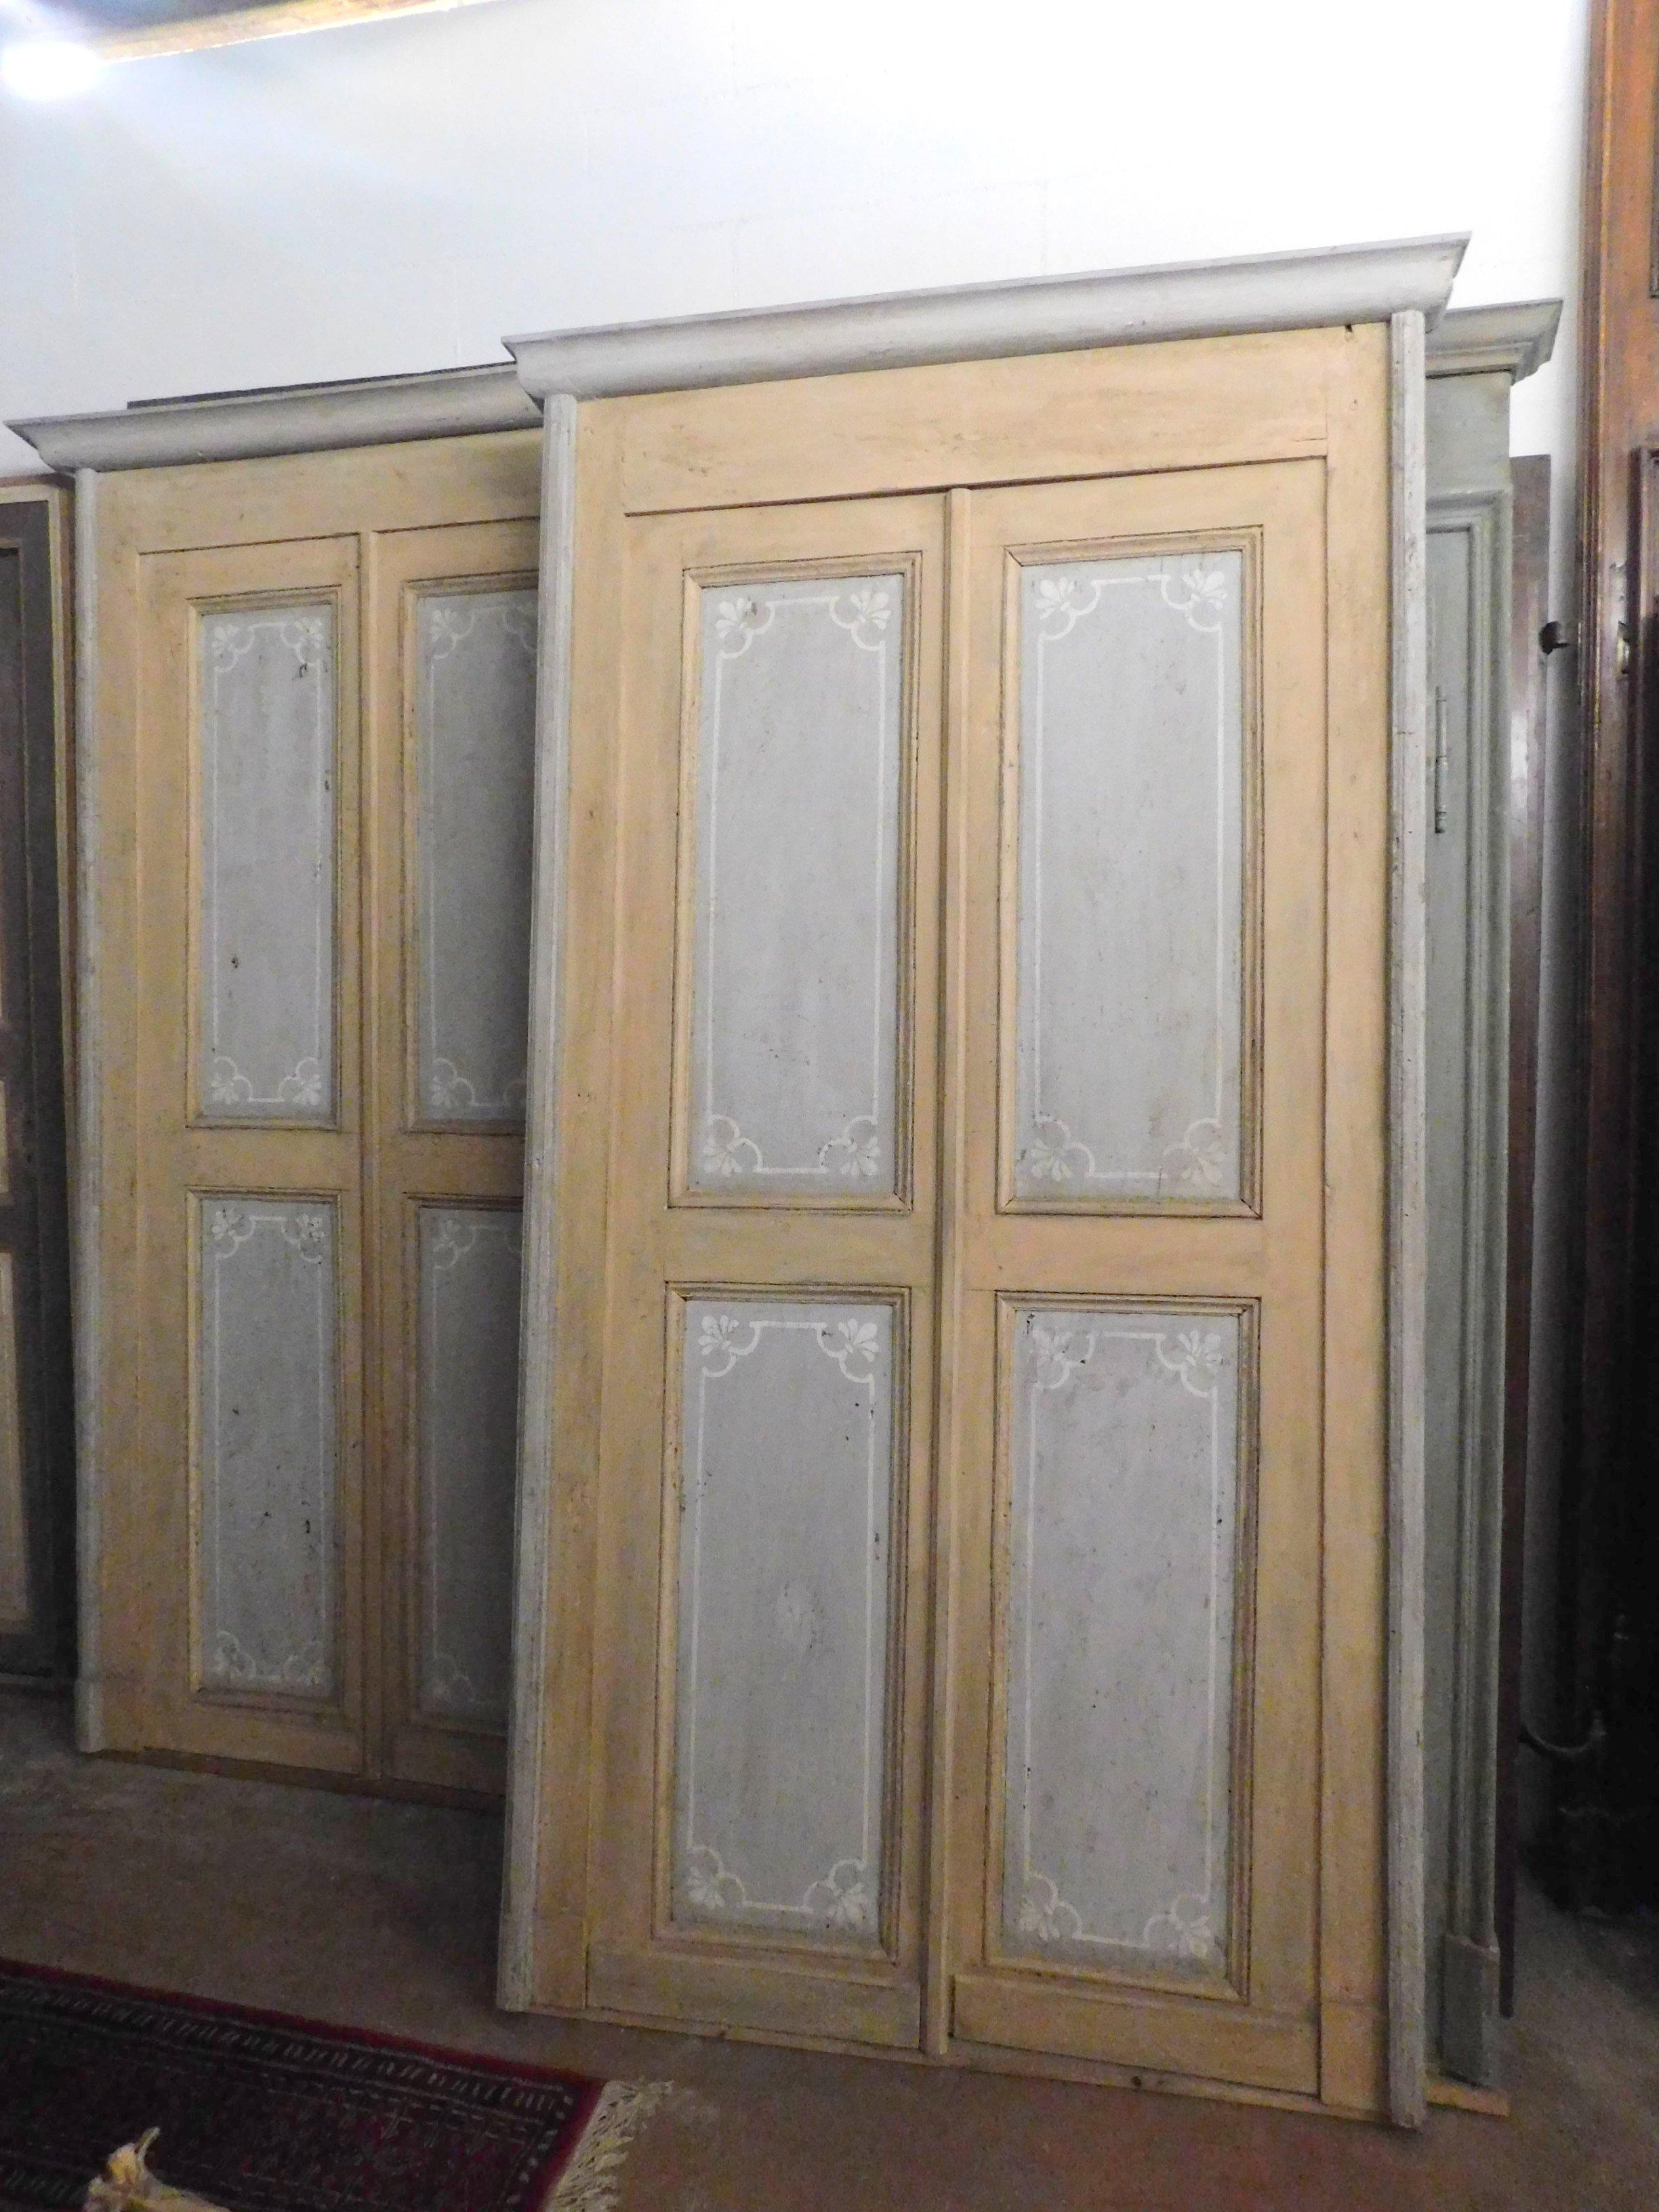 Ancienne paire de portes laquées avec cadre d'origine, laquées à la main avec panneau gris et contours beige/jaune, construites au début du 19ème siècle pour une maison en Italie.
Elegant et raffiné, les panneaux également sur l'arrière, peuvent